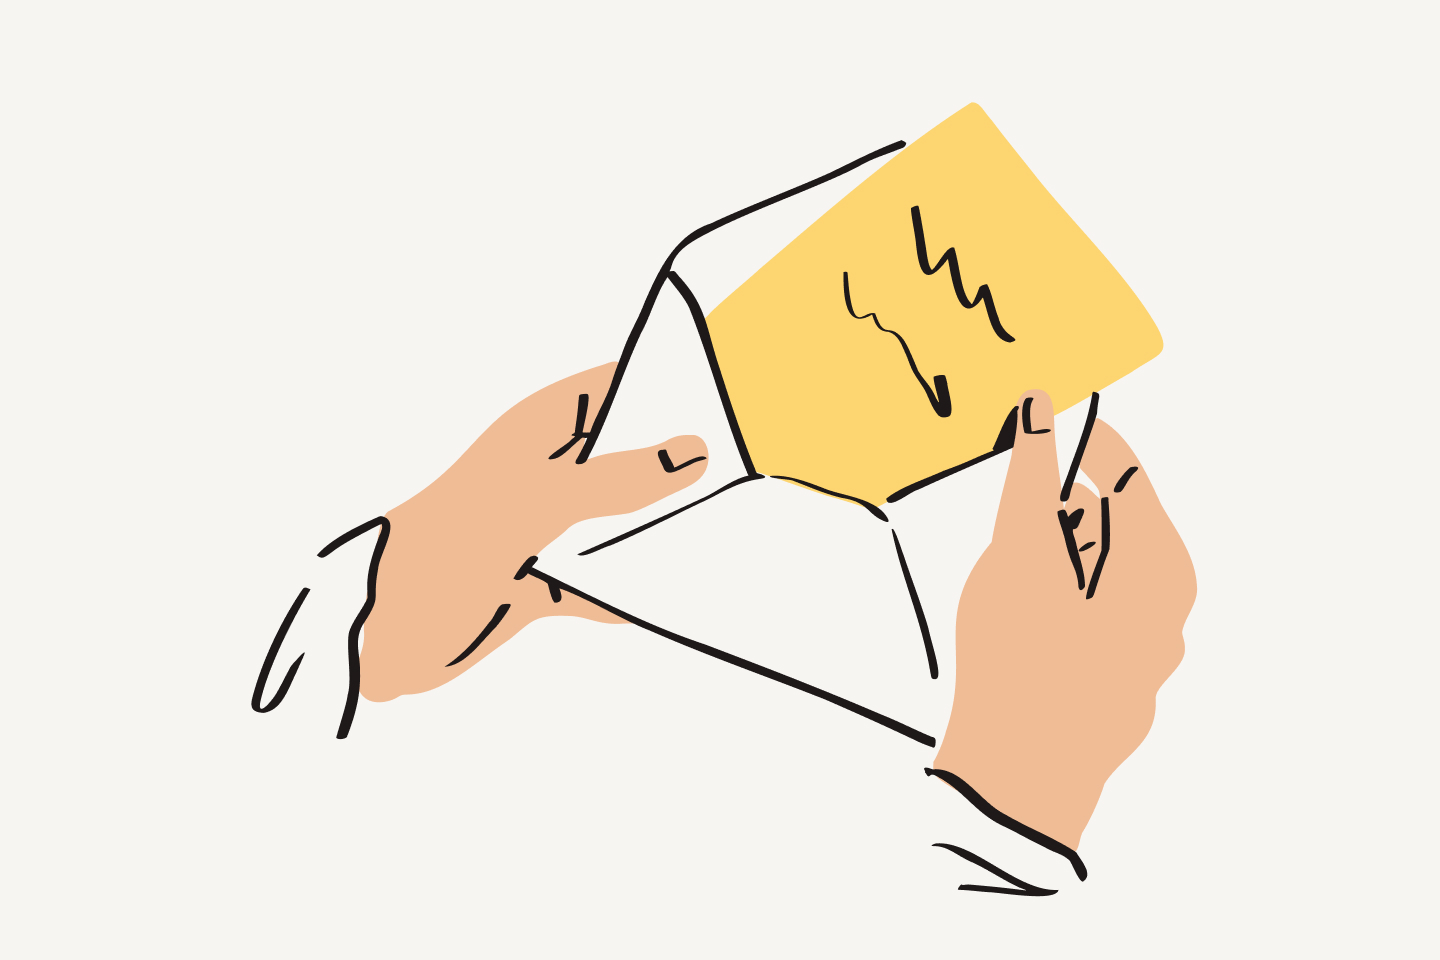 Una persona saca de un sobre una hoja de papel amarillo con texto escrito